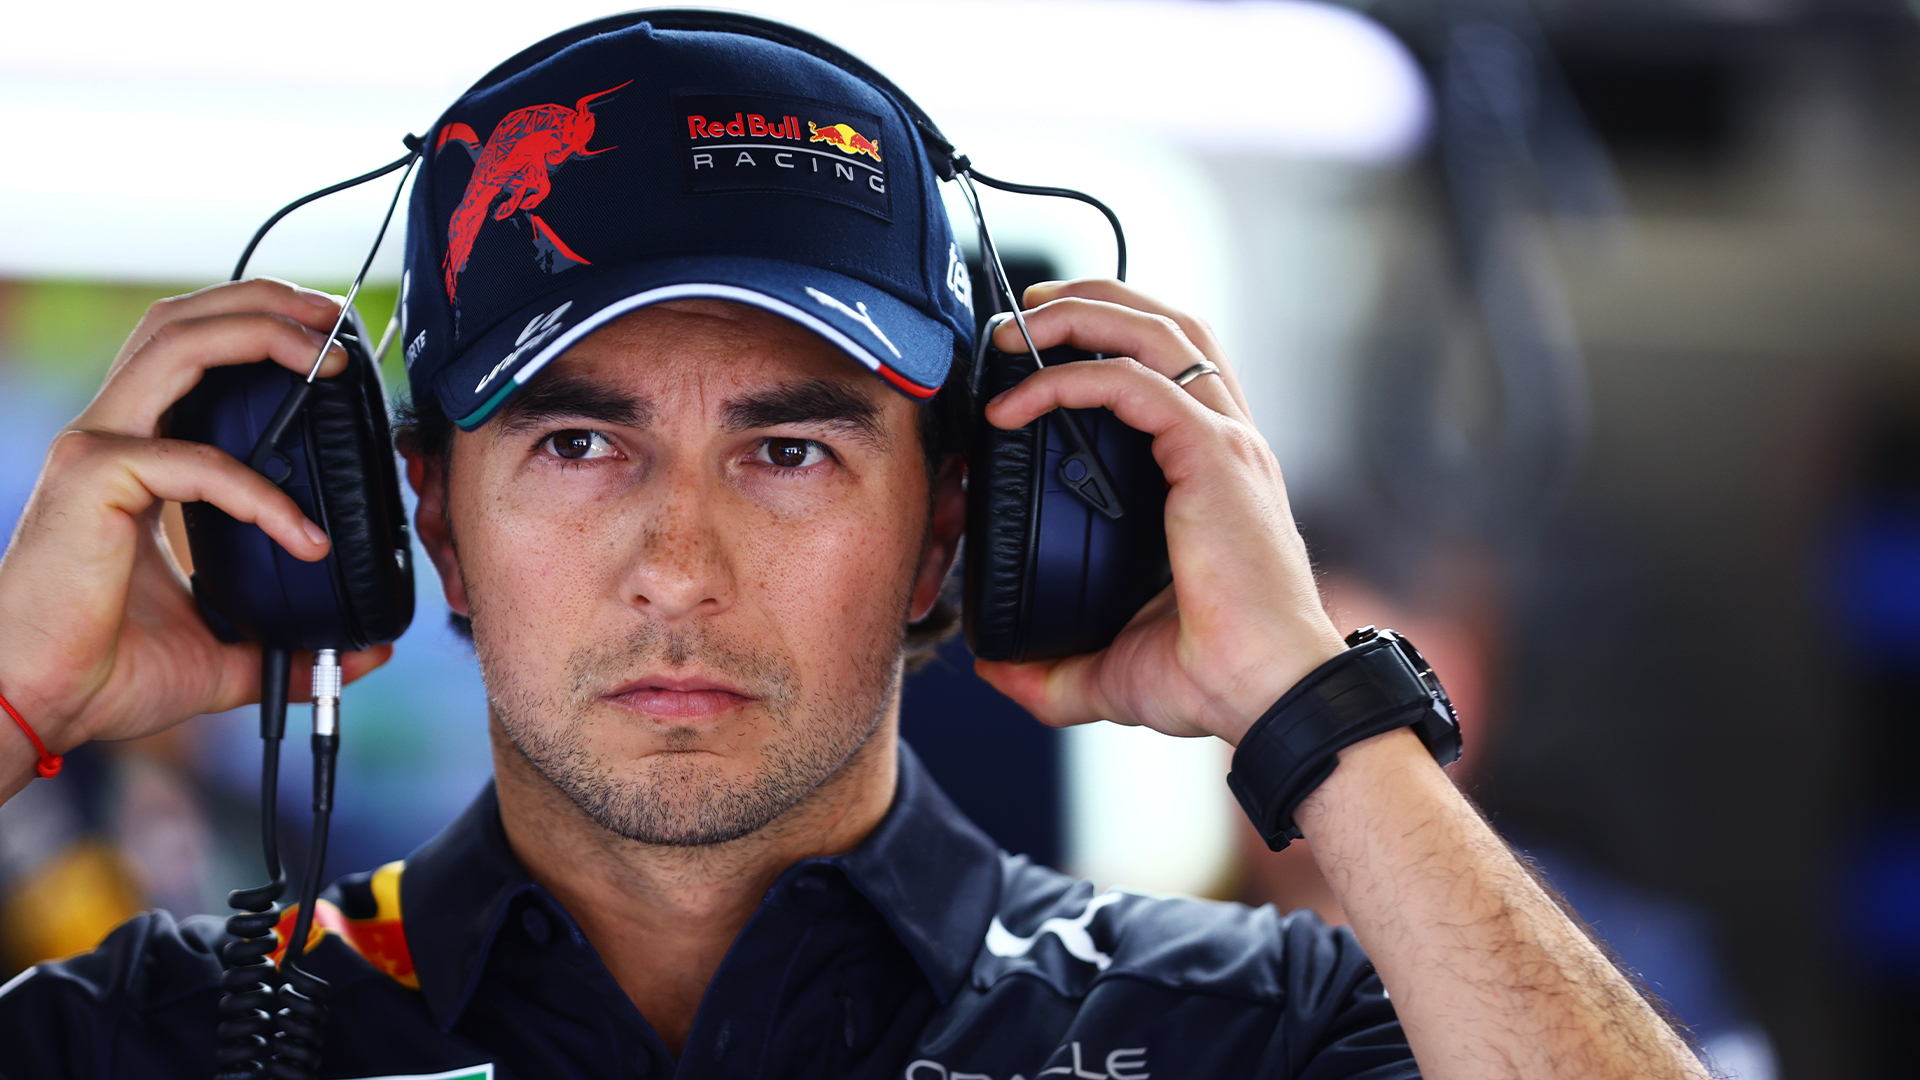 Dificultades para Checo Pérez en primer día de actividades del GP de España: “Espero que podamos dar un paso adelante”